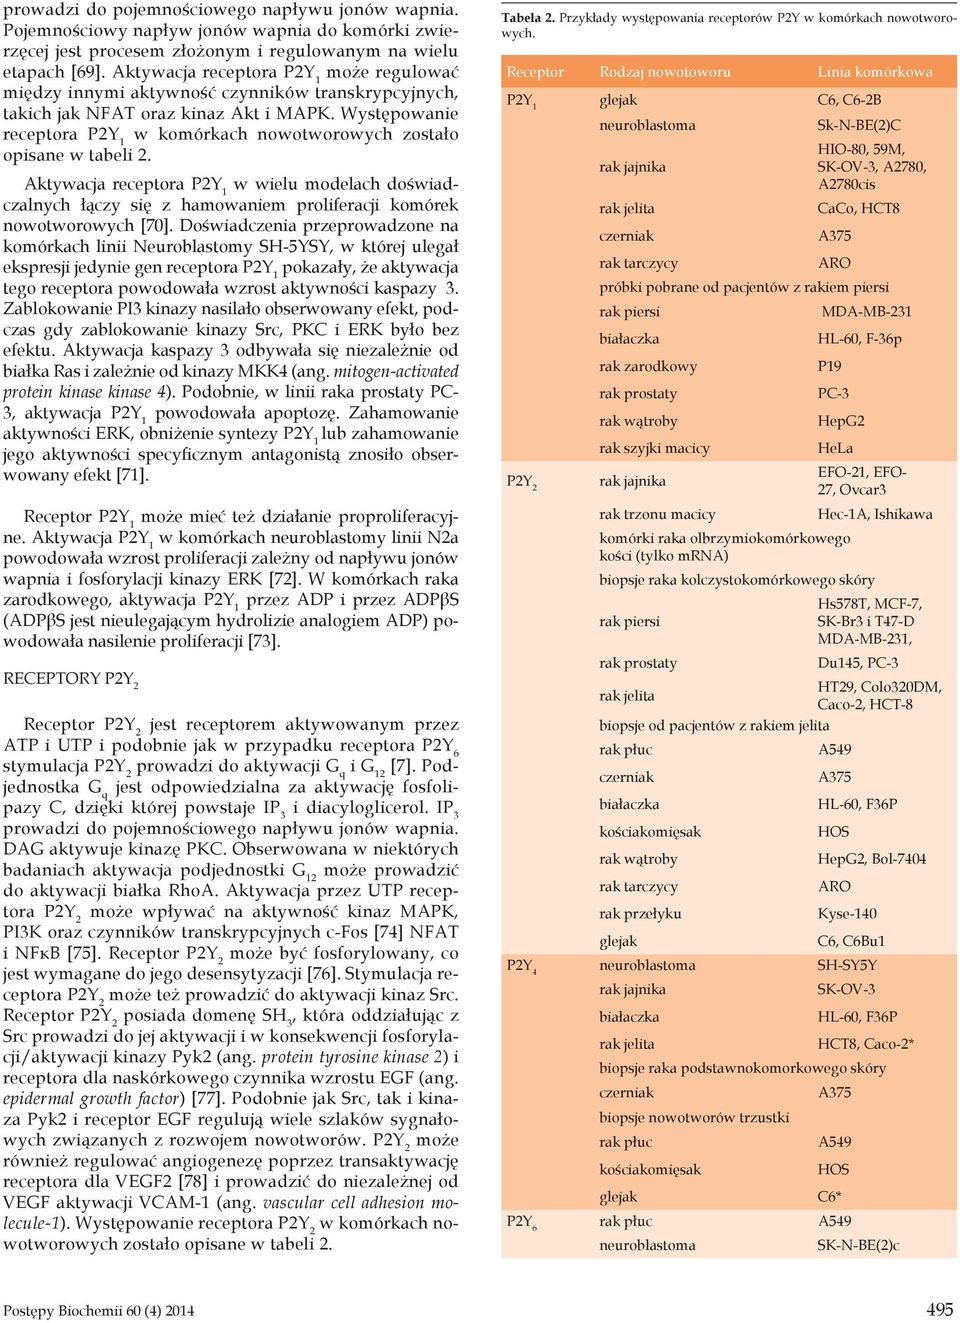 Występowanie receptora P2Y 1 w komórkach nowotworowych zostało opisane w tabeli 2.